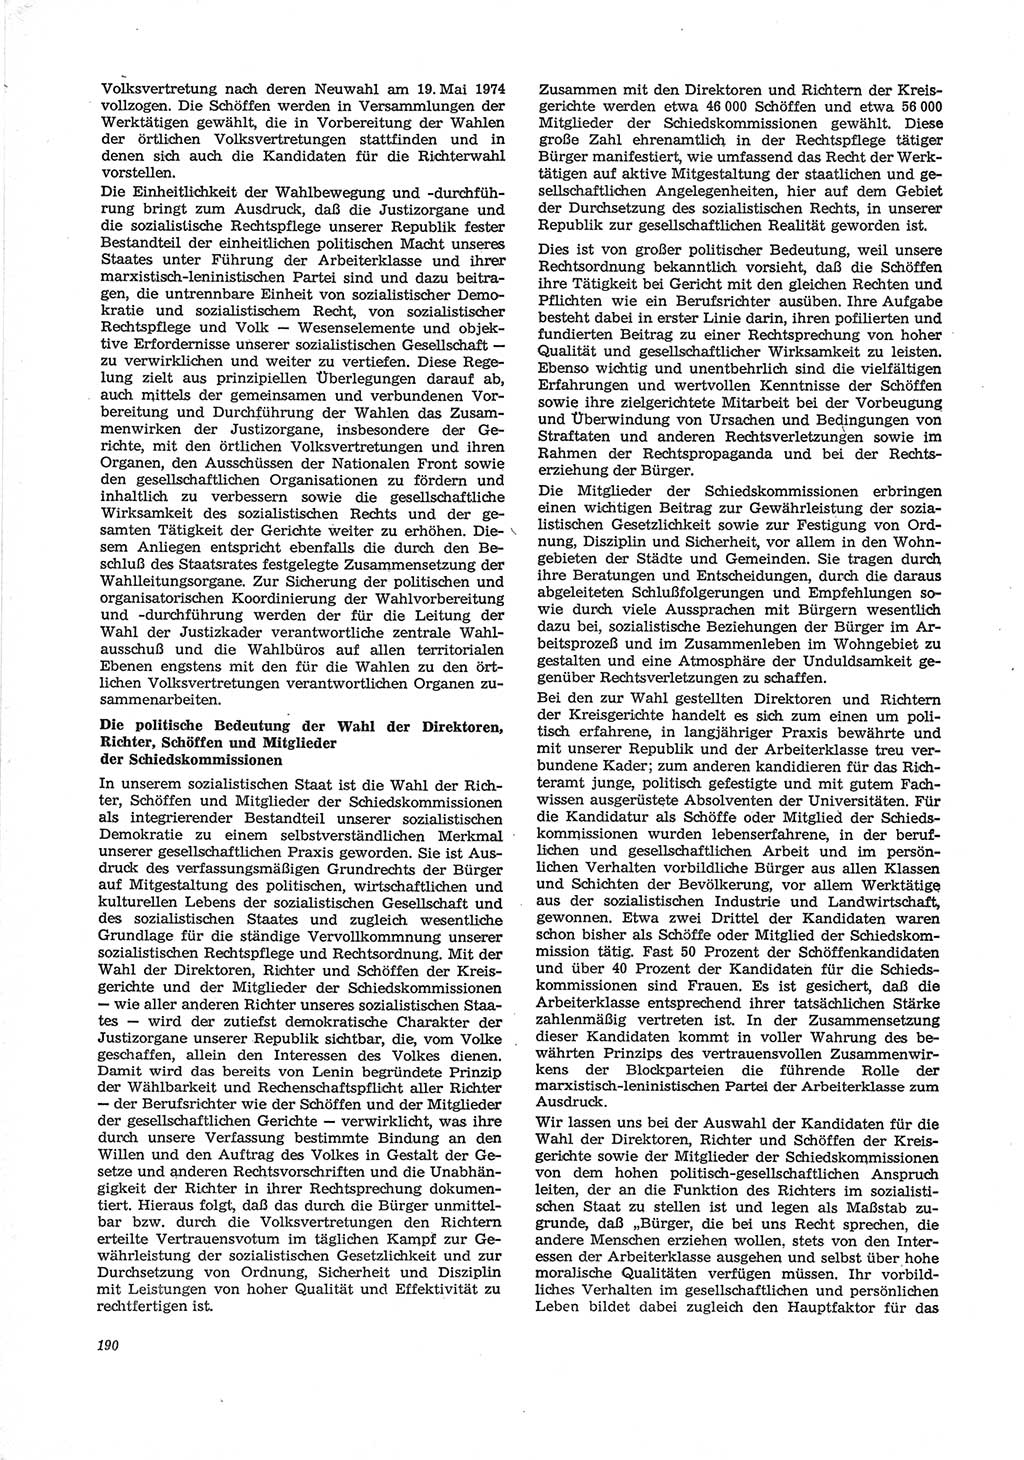 Neue Justiz (NJ), Zeitschrift für Recht und Rechtswissenschaft [Deutsche Demokratische Republik (DDR)], 28. Jahrgang 1974, Seite 190 (NJ DDR 1974, S. 190)